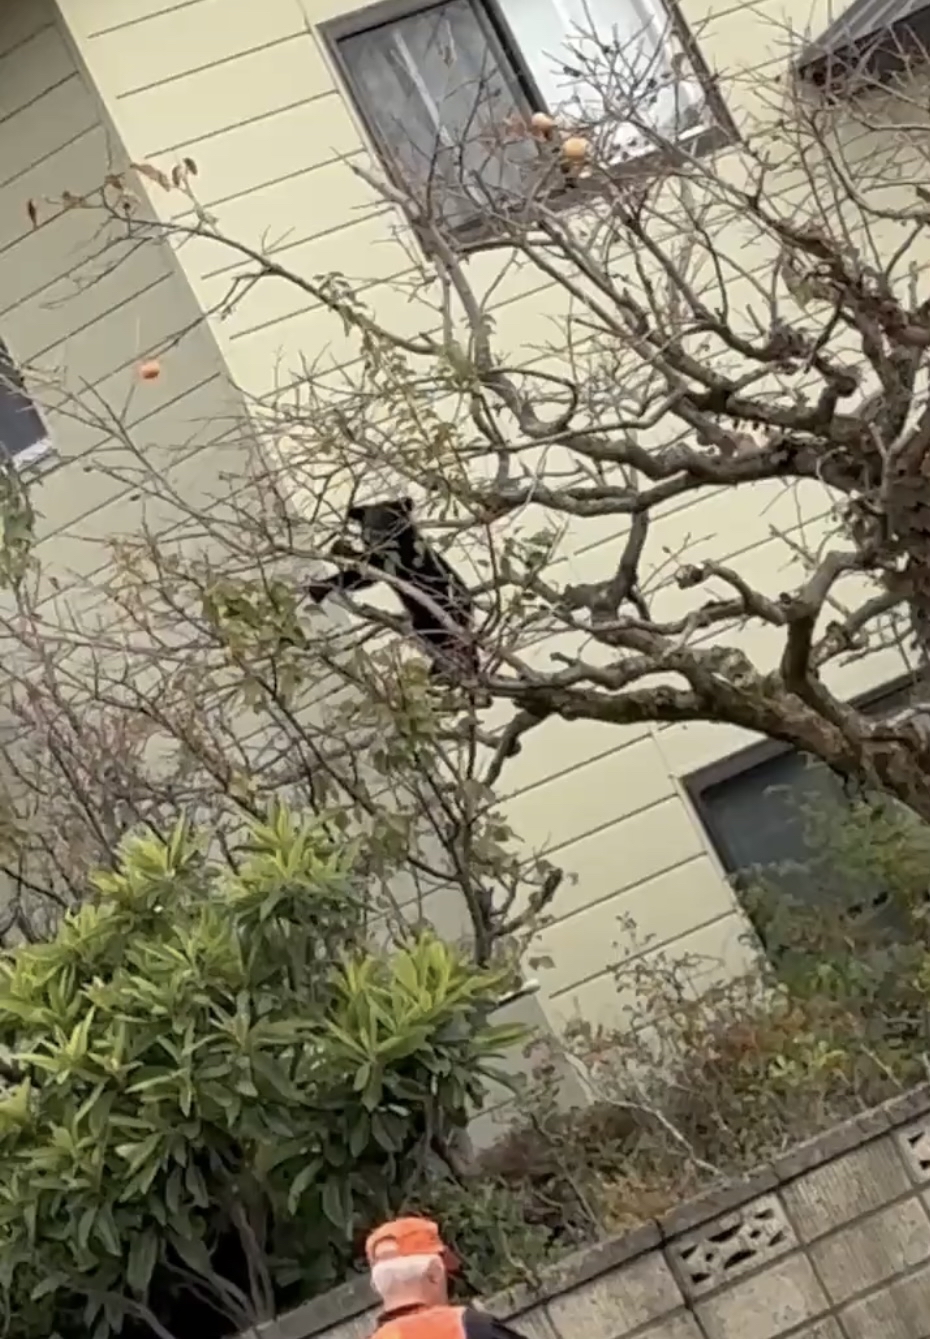 黑熊在秋田市饭岛地区住宅旁爬树。 X@HidetoShibaba